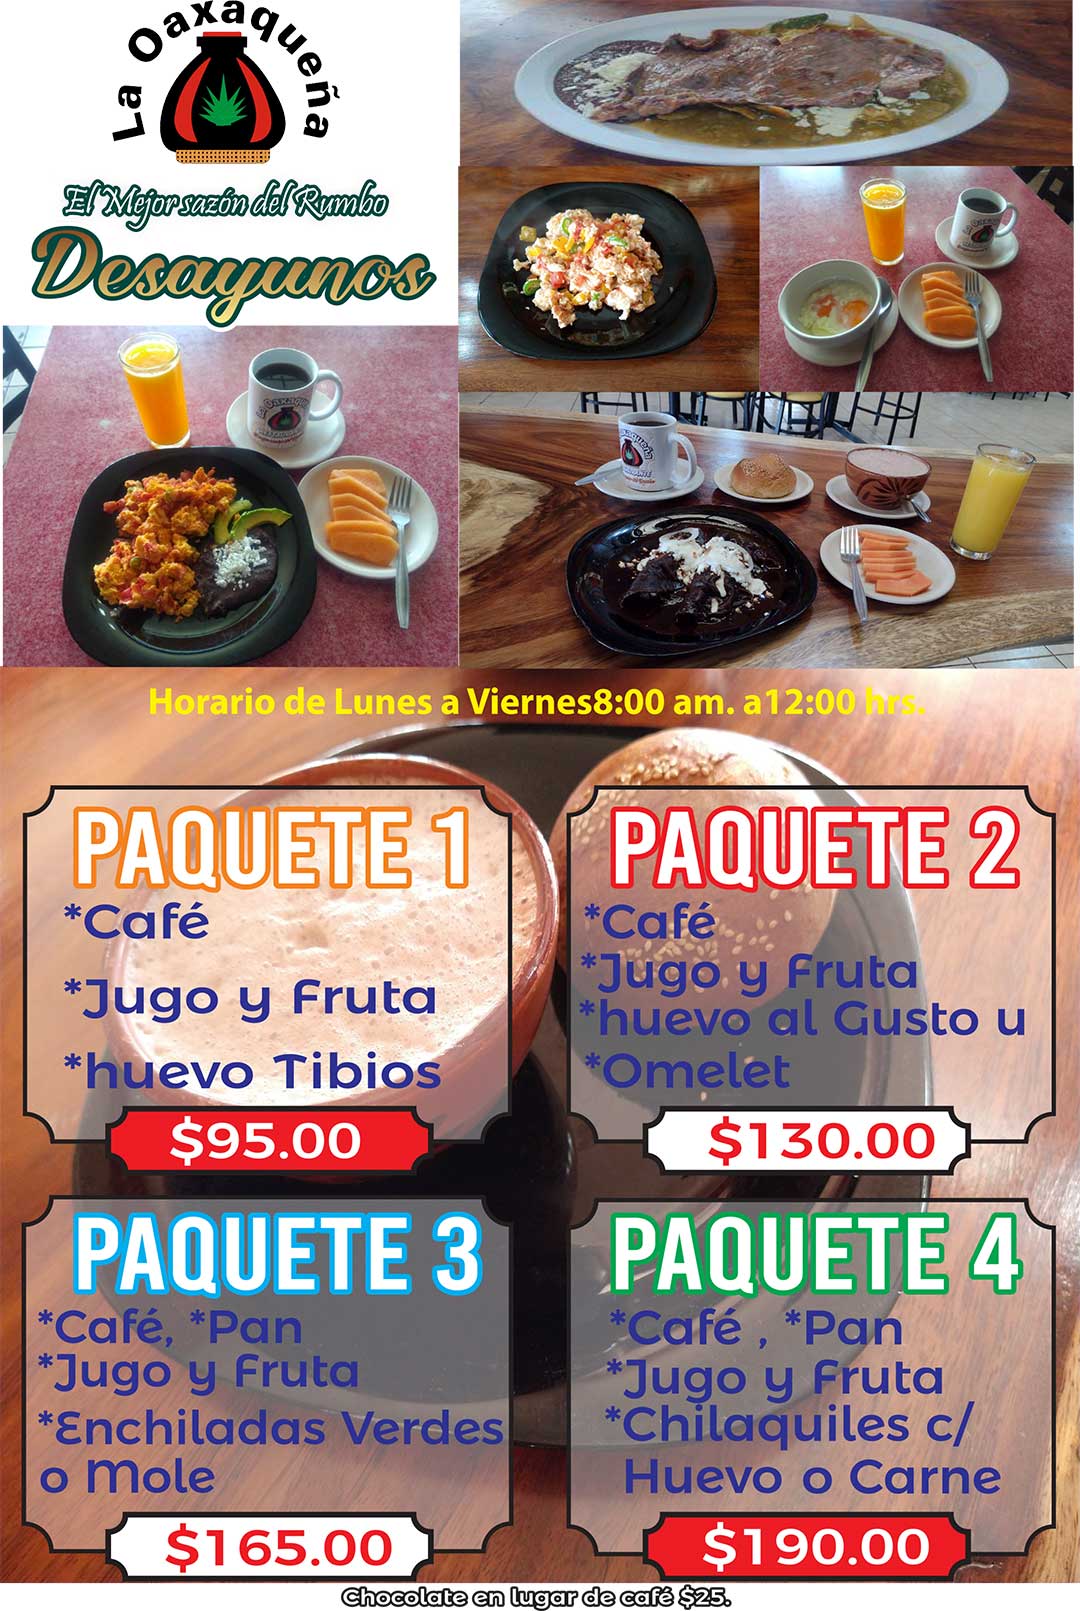 Desayunos - Paquetes - Restaurante La Oaxaqueña